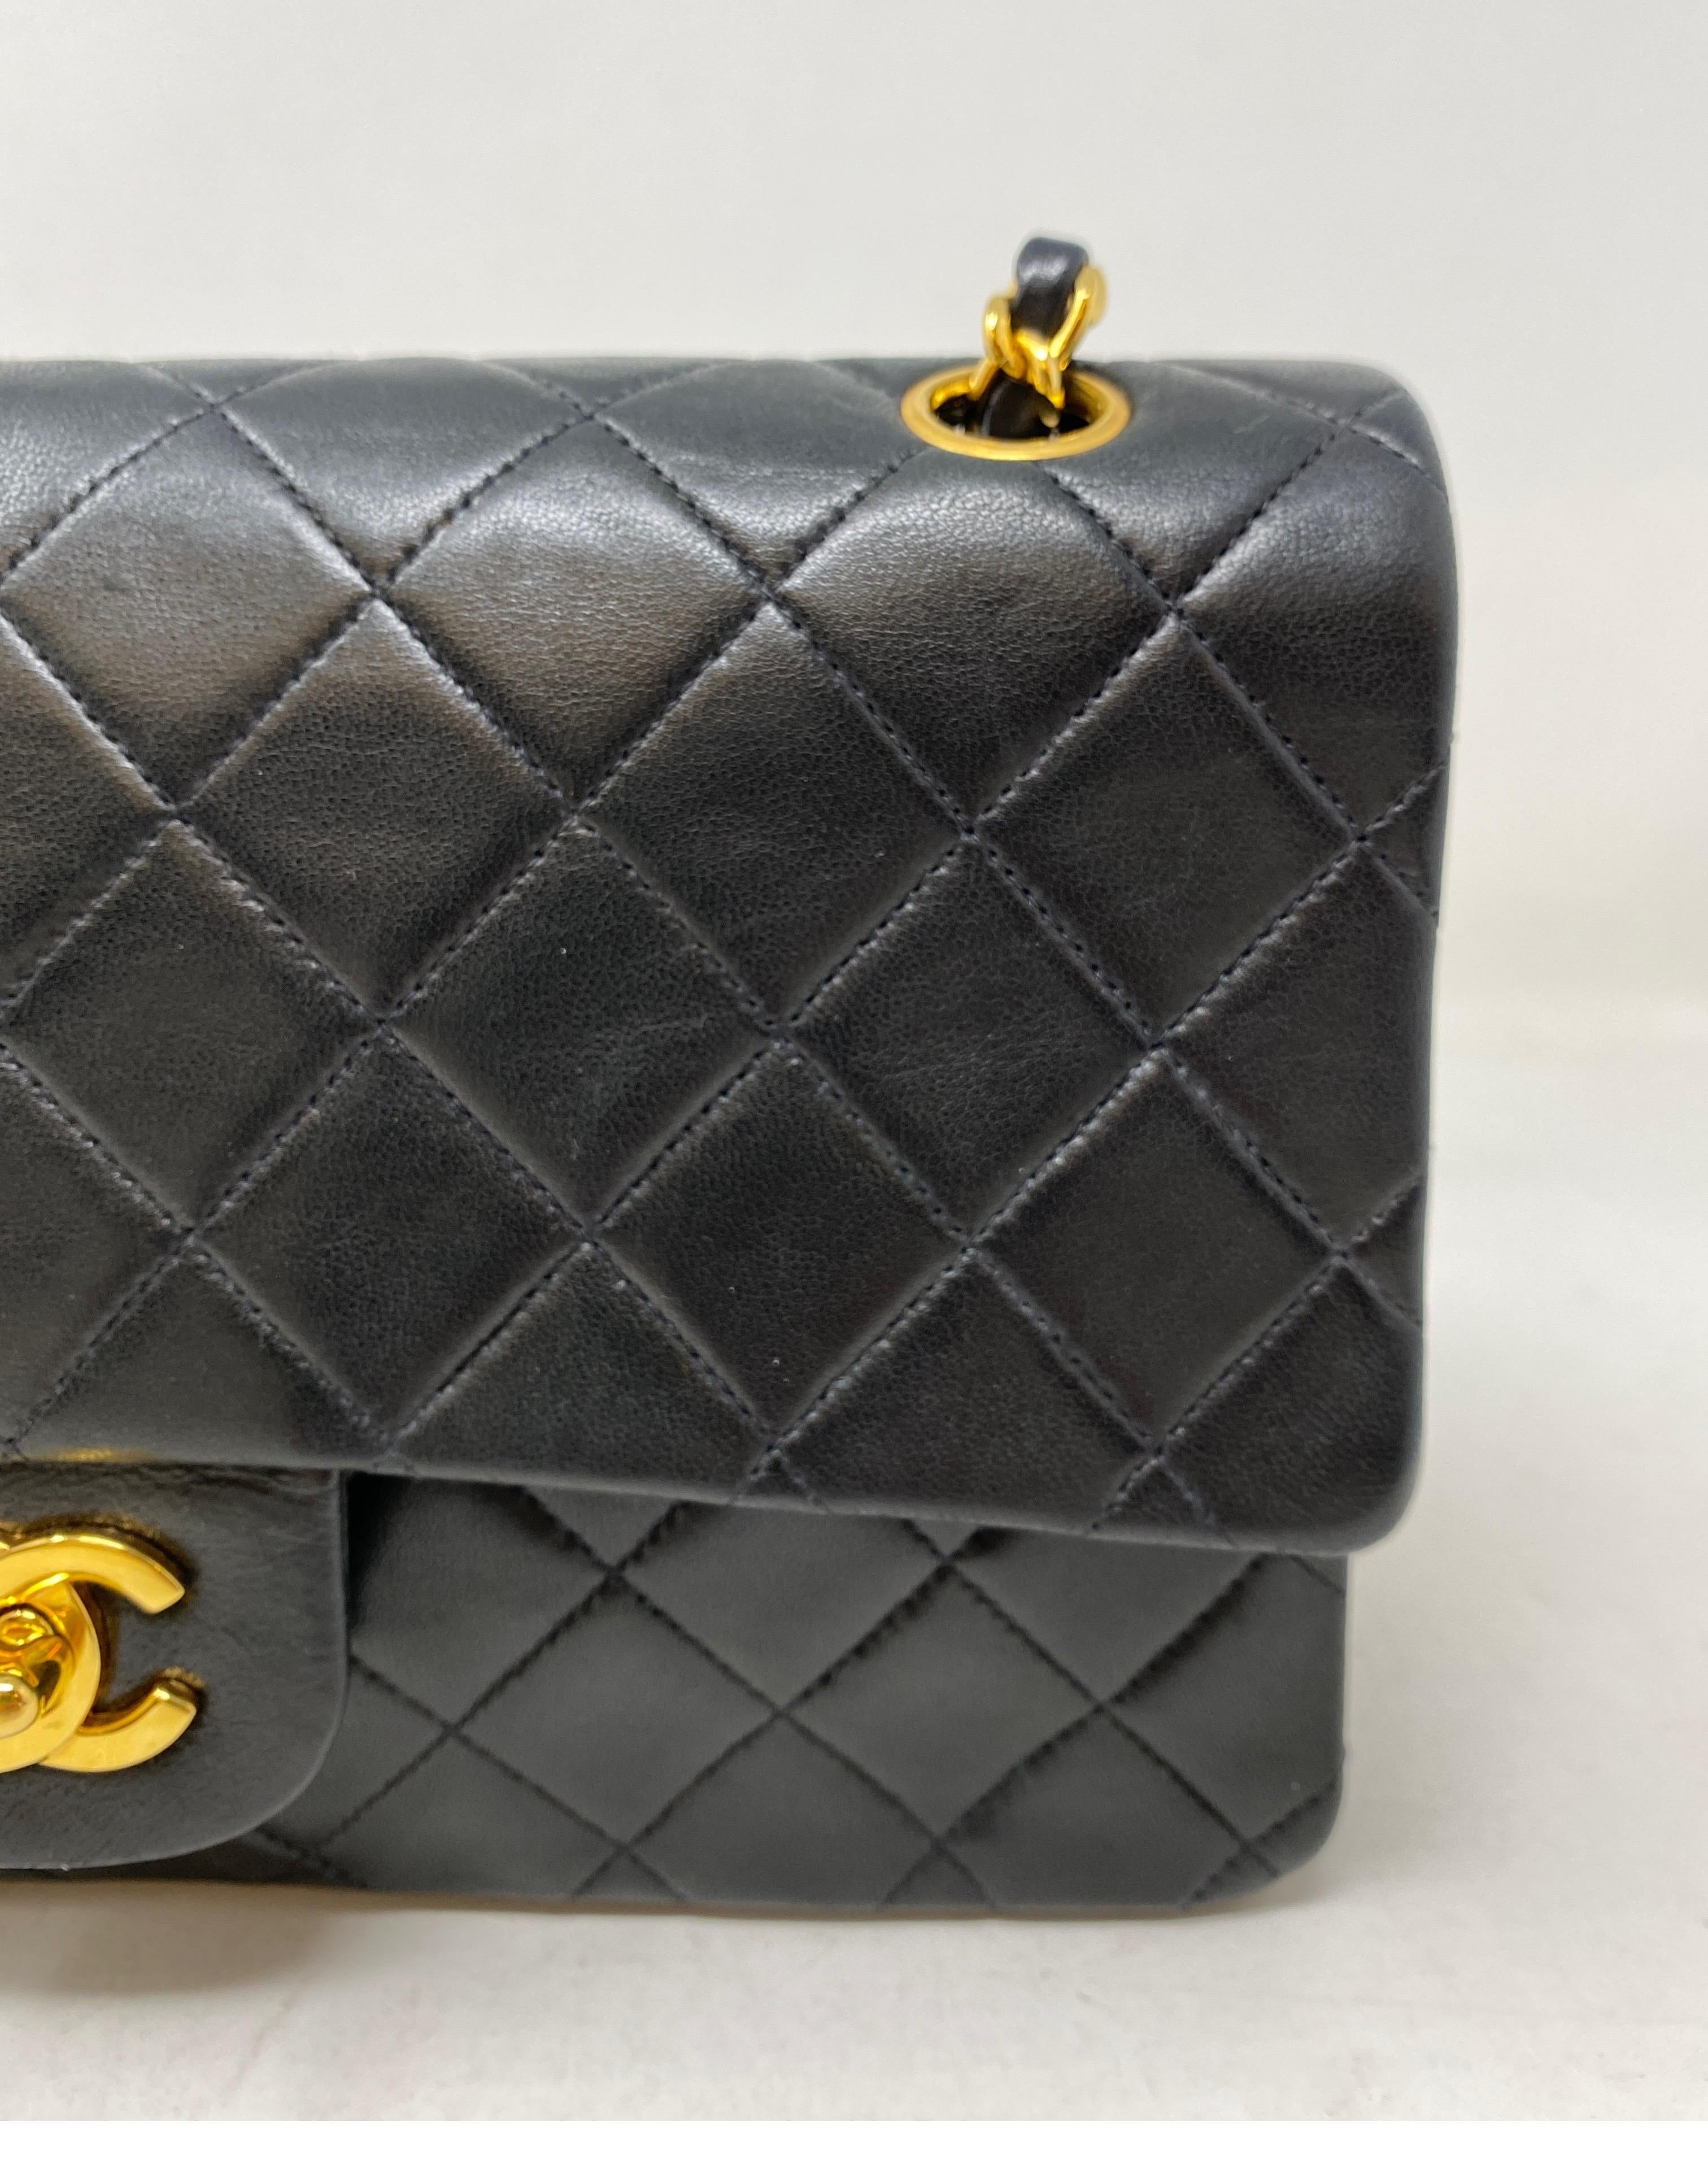 Chanel Black Vintage Medium Double Flap Classic Bag 2